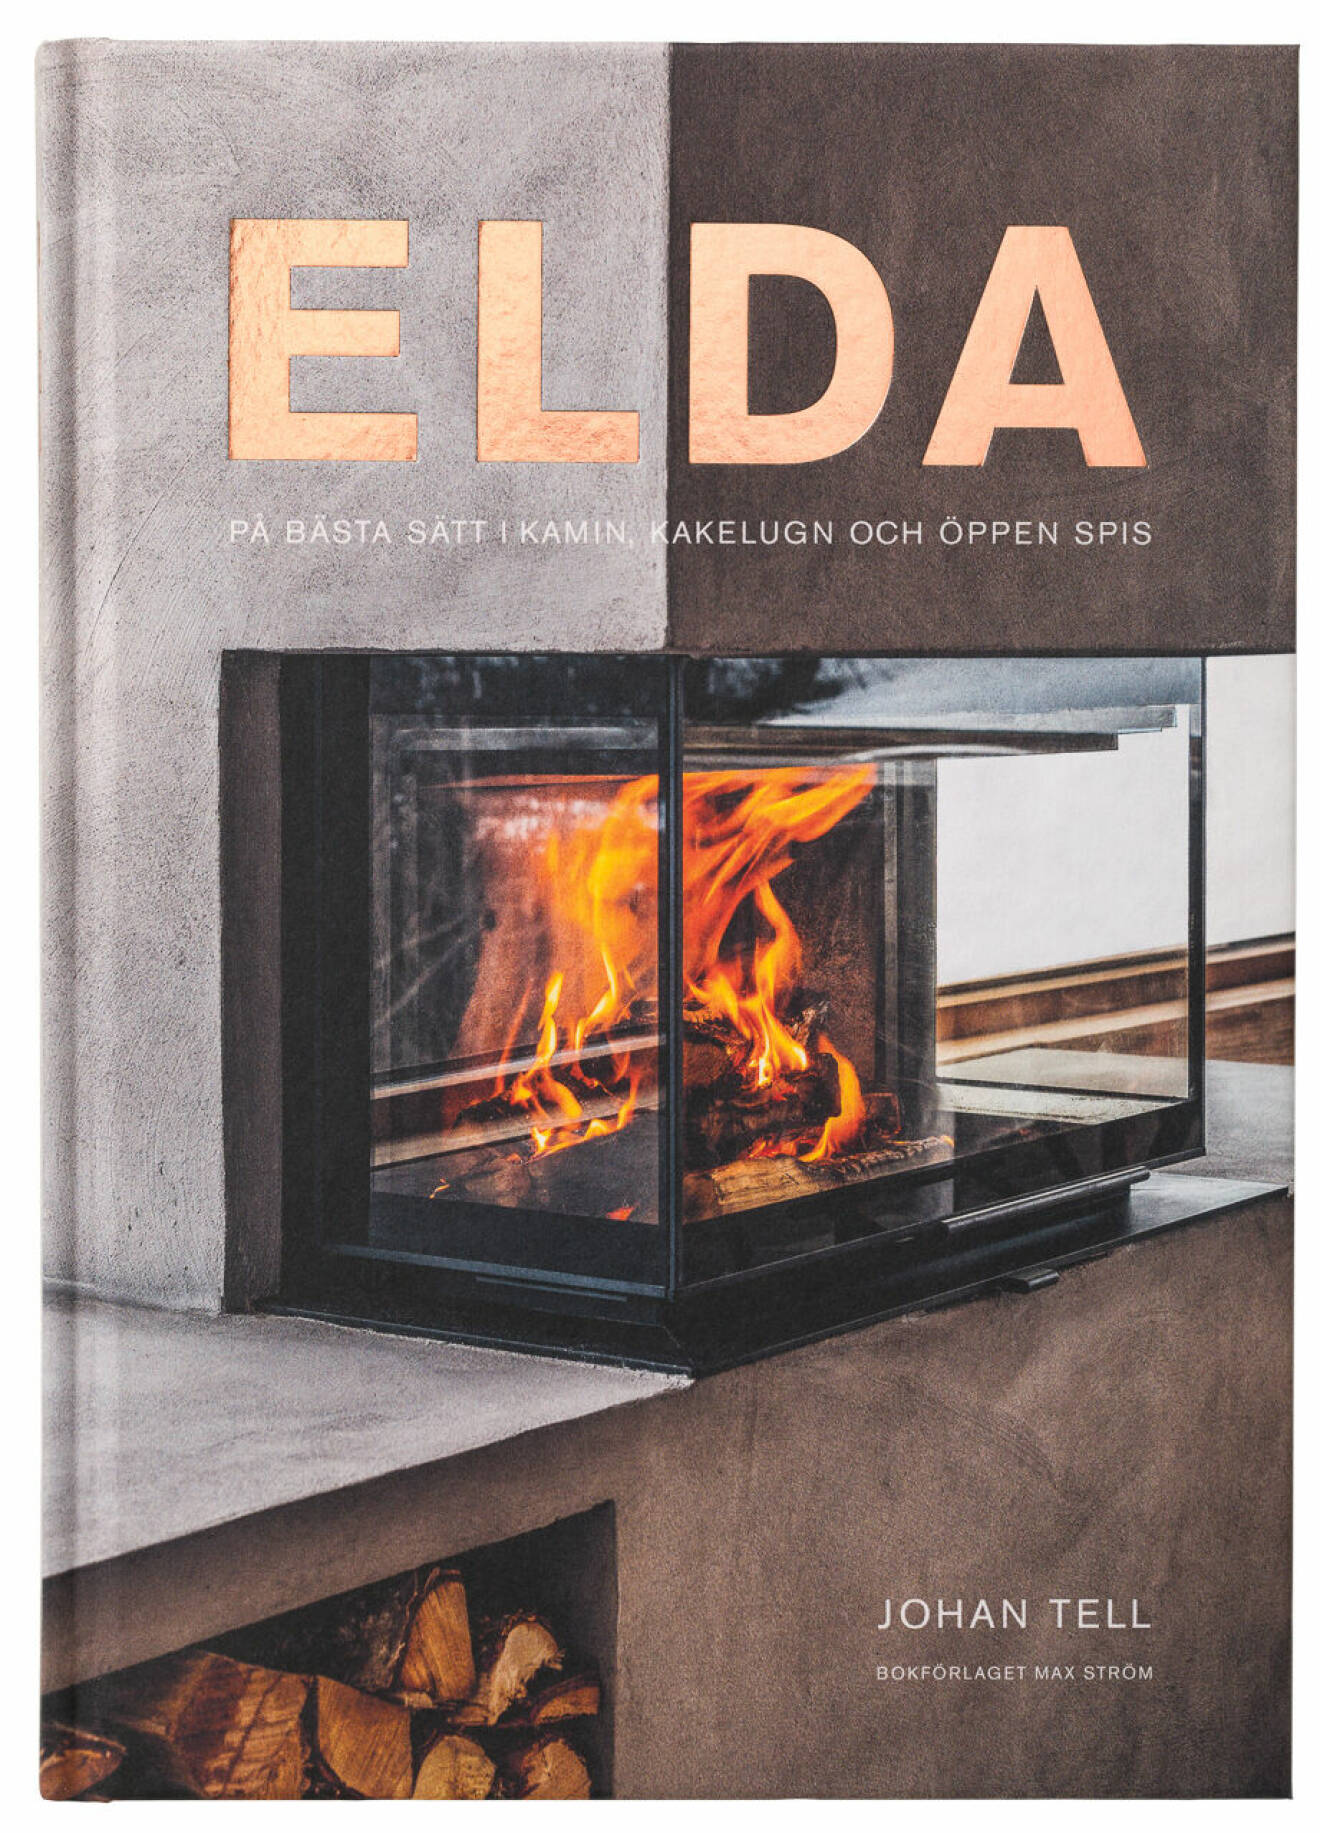 Omslaget till Elda på bästa sätt i kamin, kakelugn och öppen spis, skriven av Johan Tell.